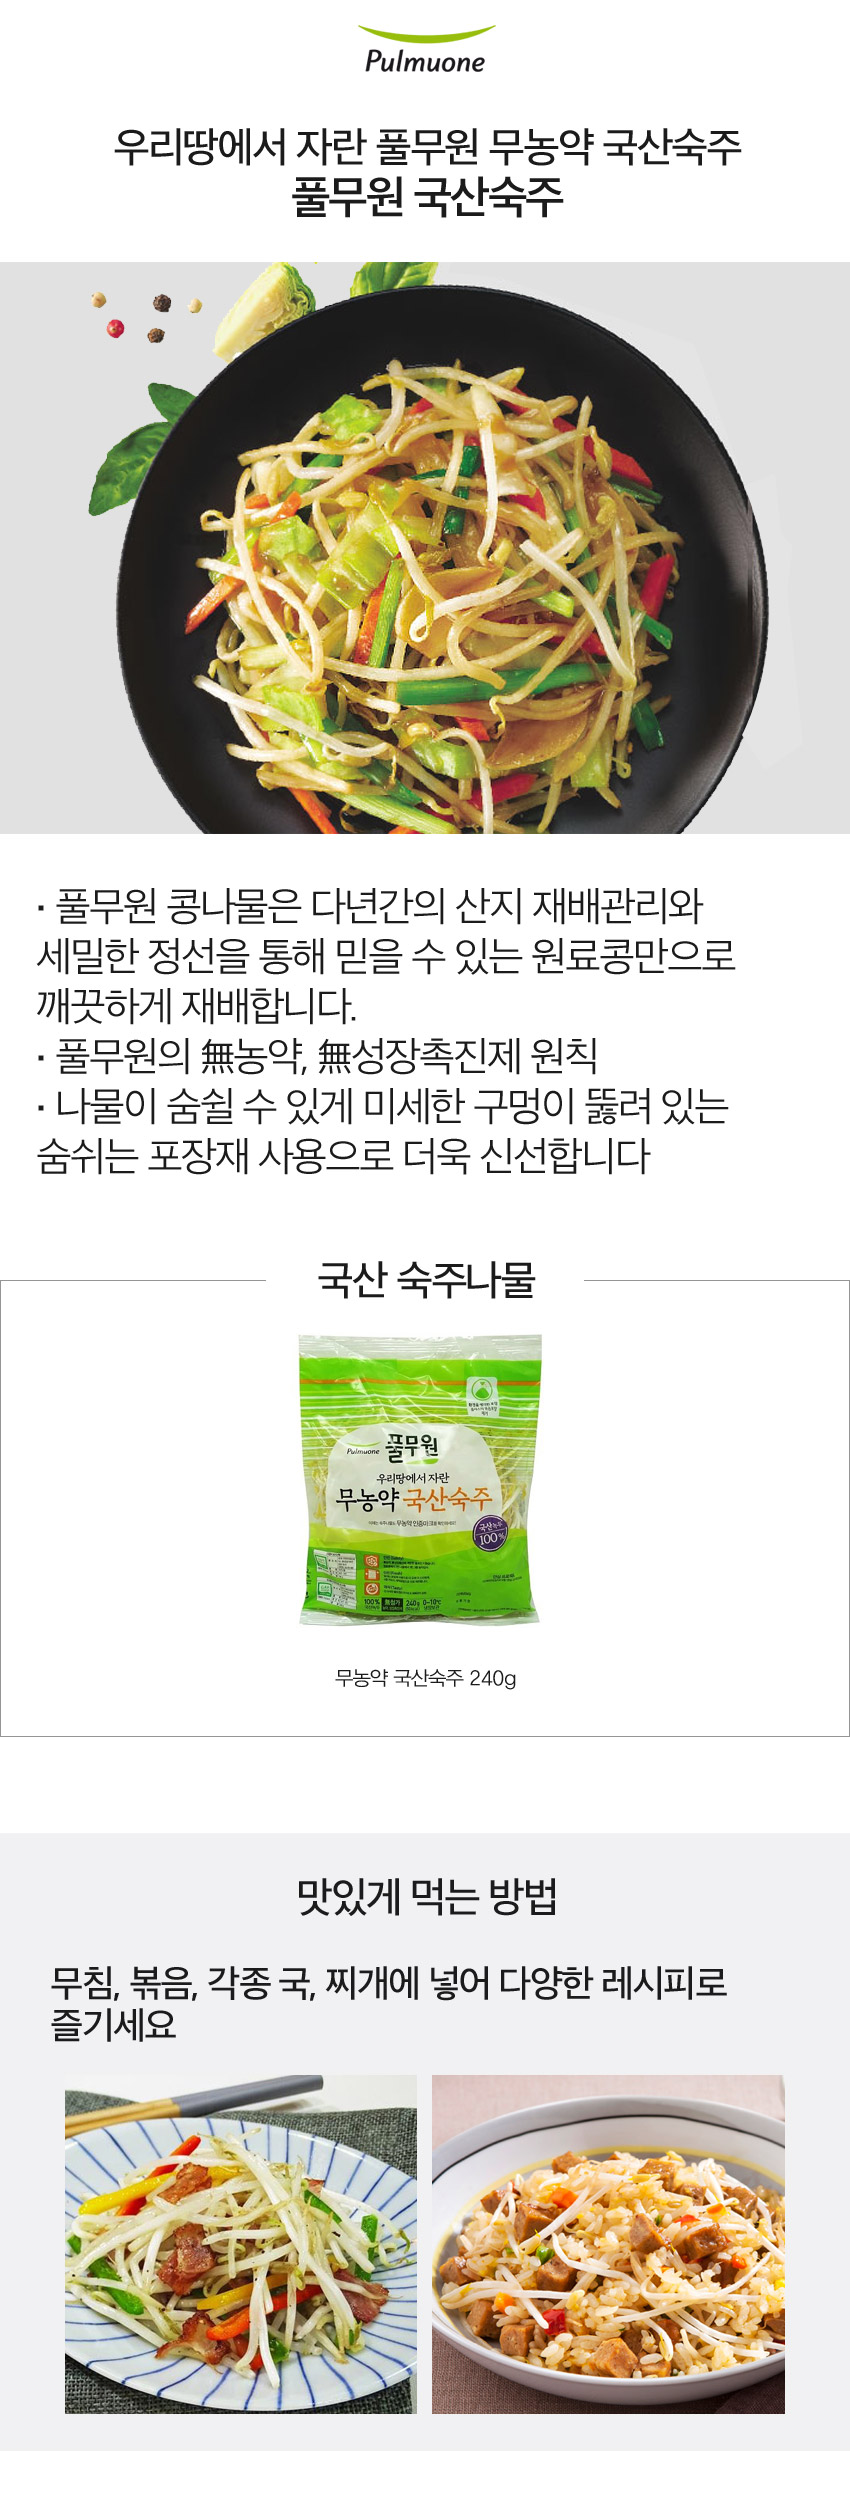 韓國食品-[Pulmuone] Mung Bean Sprouts 240g